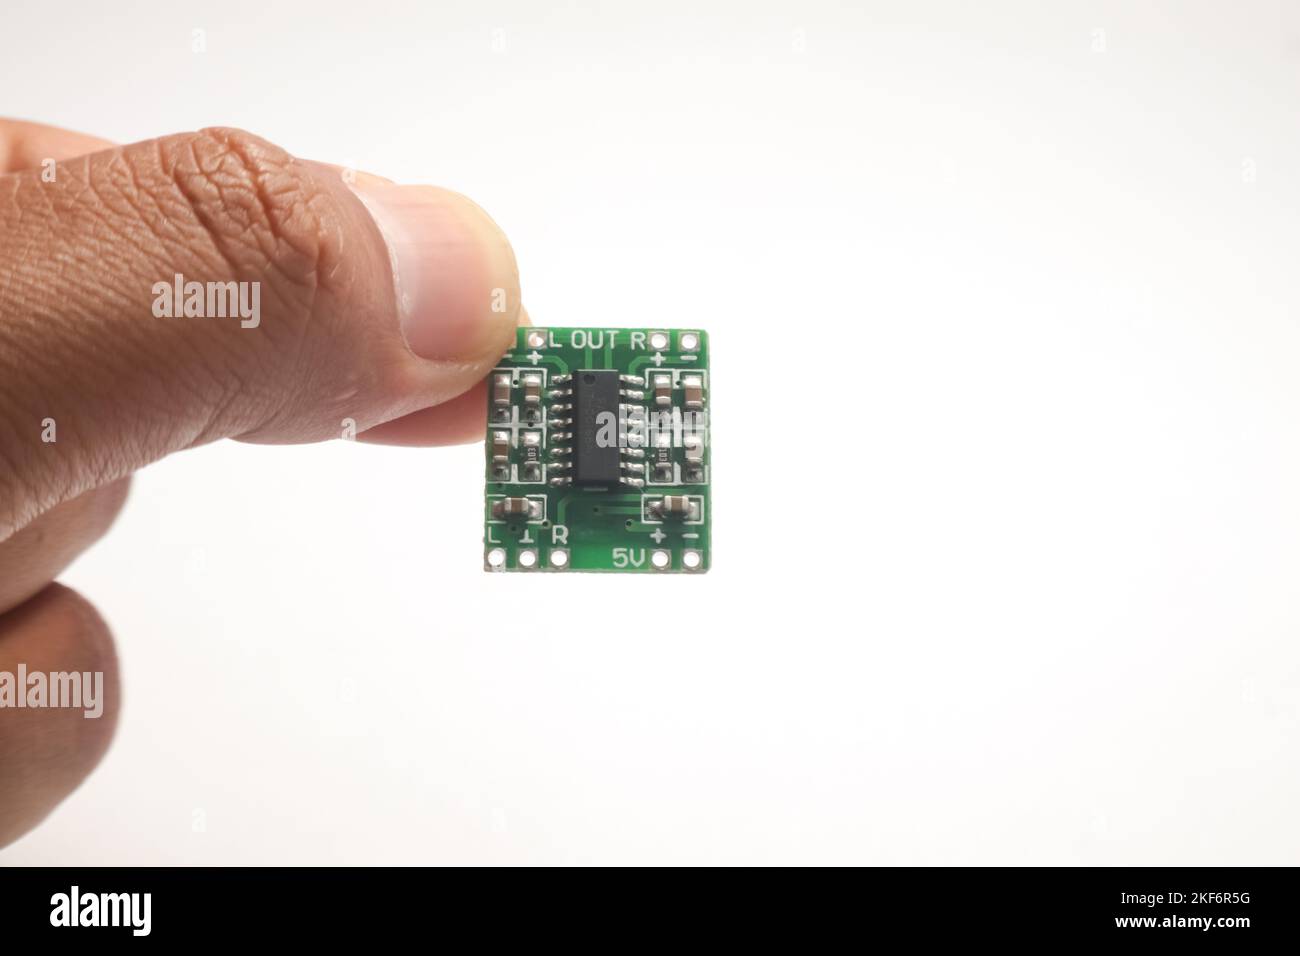 Ein kleines Audioverstärkermodul, das in einer Hand gehalten wird, dient als DIY-Material für den Elektronikbastler. Stockfoto